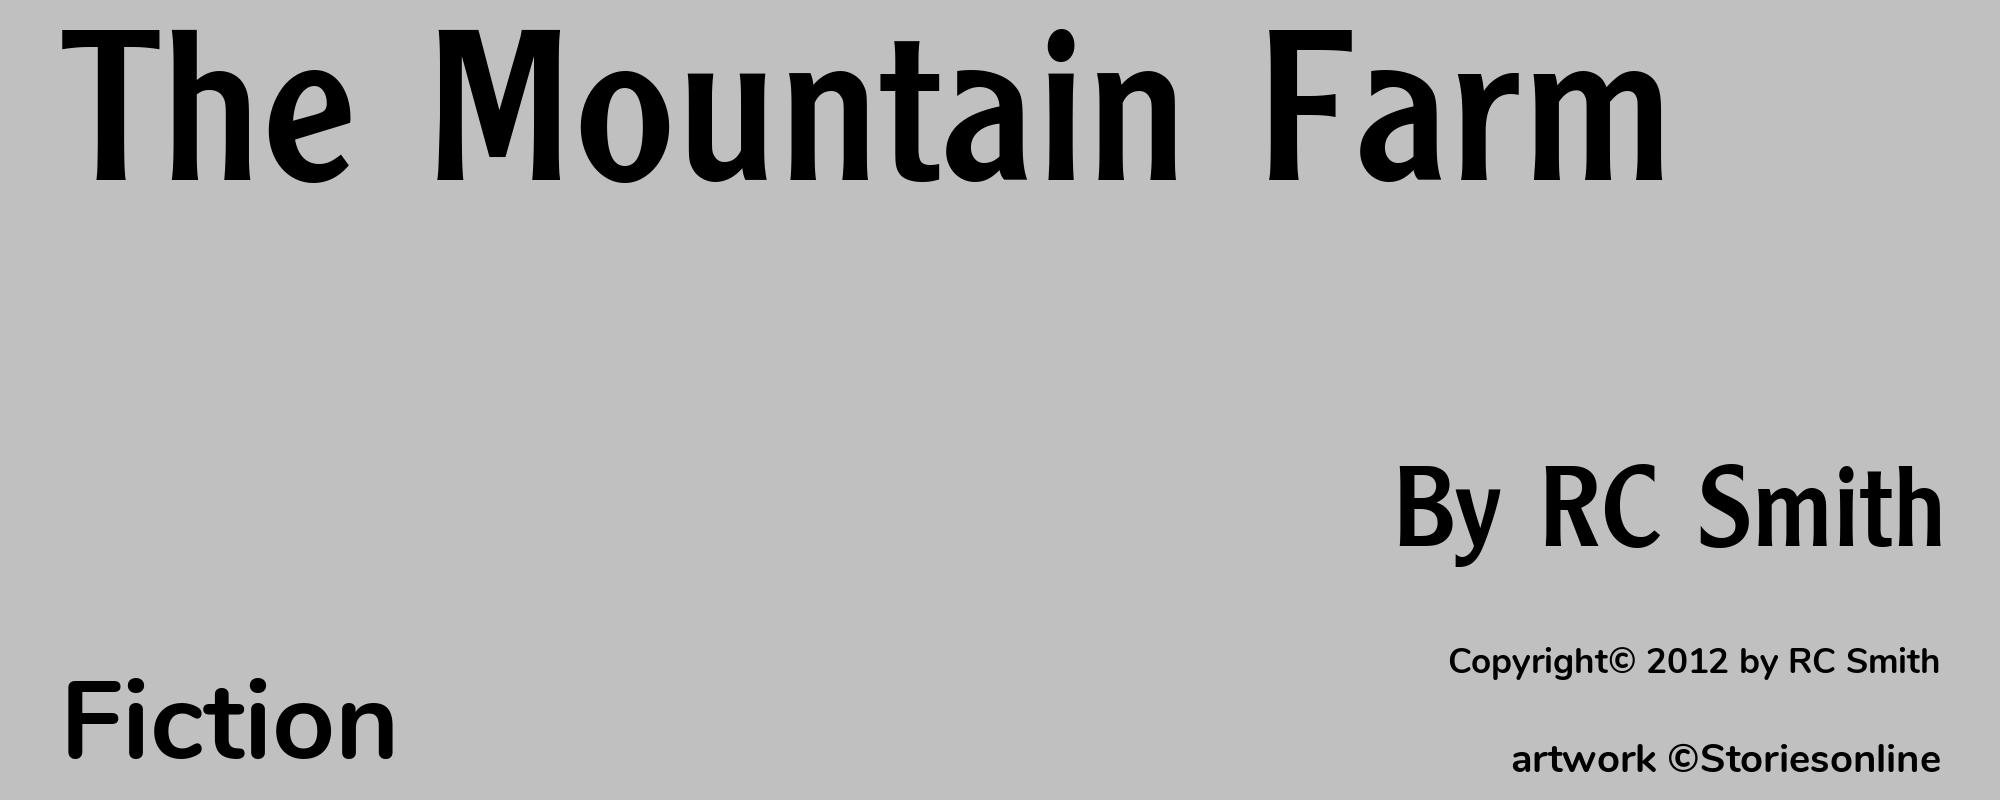 The Mountain Farm - Cover